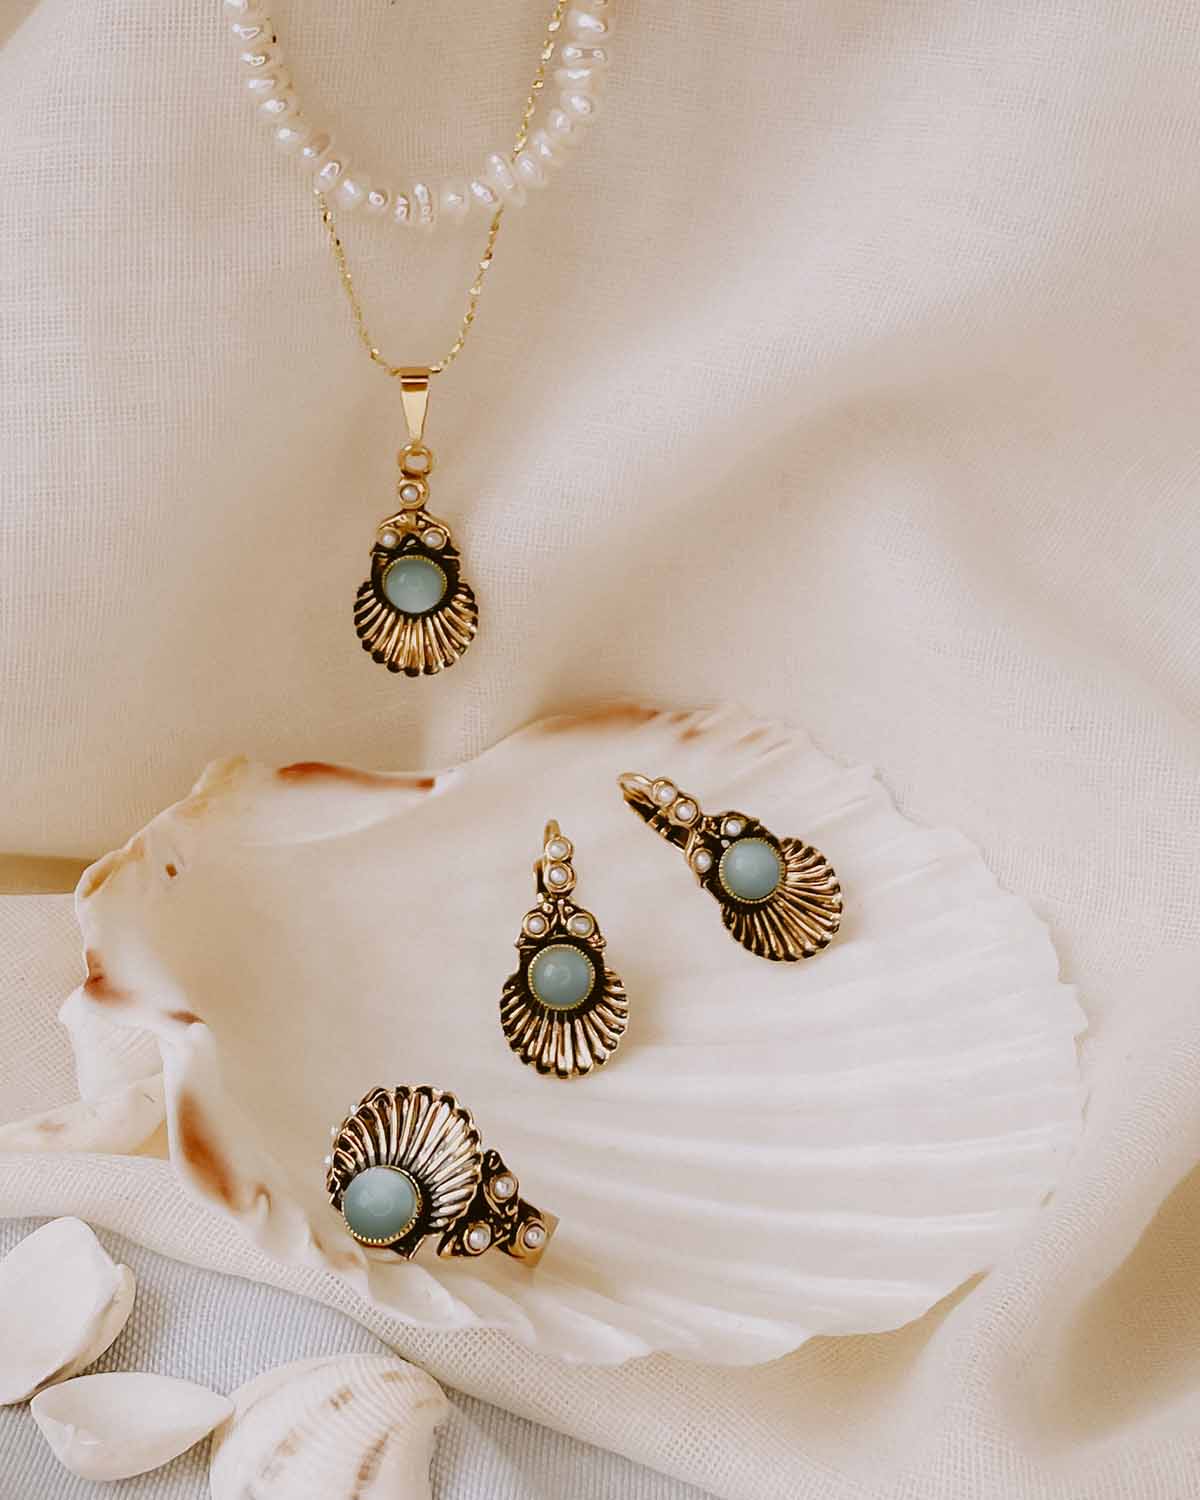 The Rio Marina Pearl Necklace (Marina Edition)